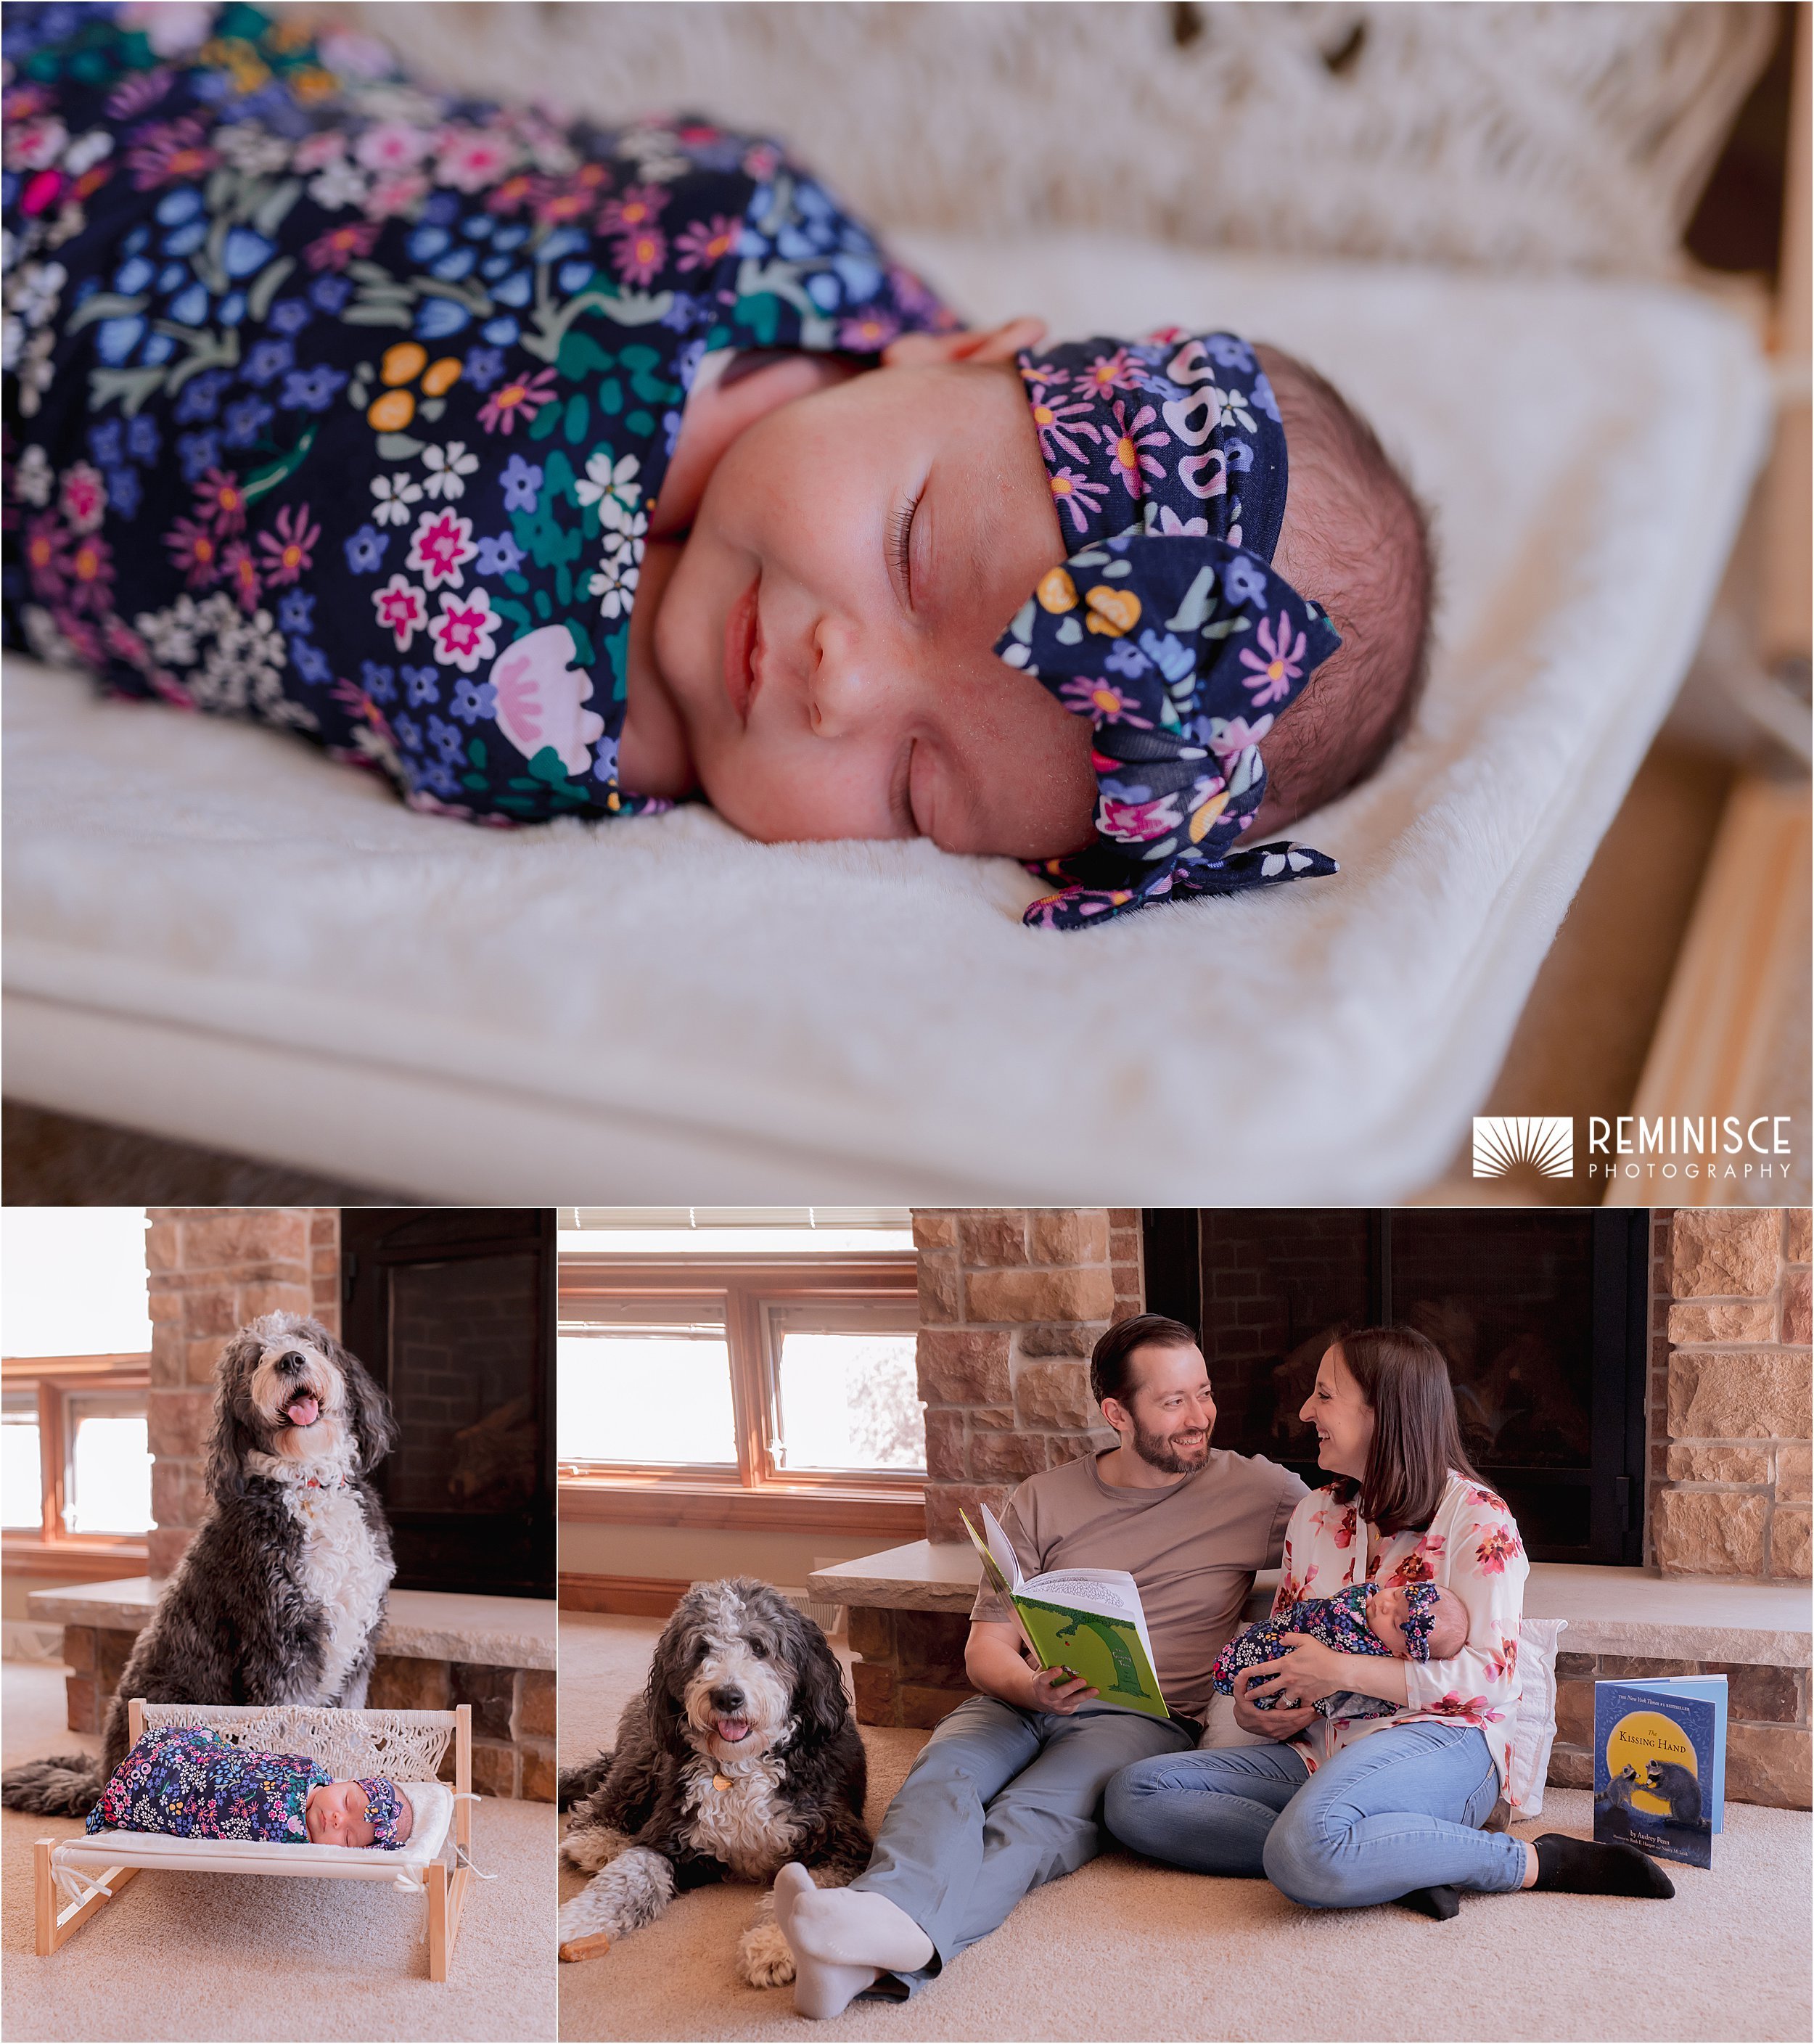 05-warm-cozy-artistic-at-home-newborn-session-mom-dad-dog.JPG